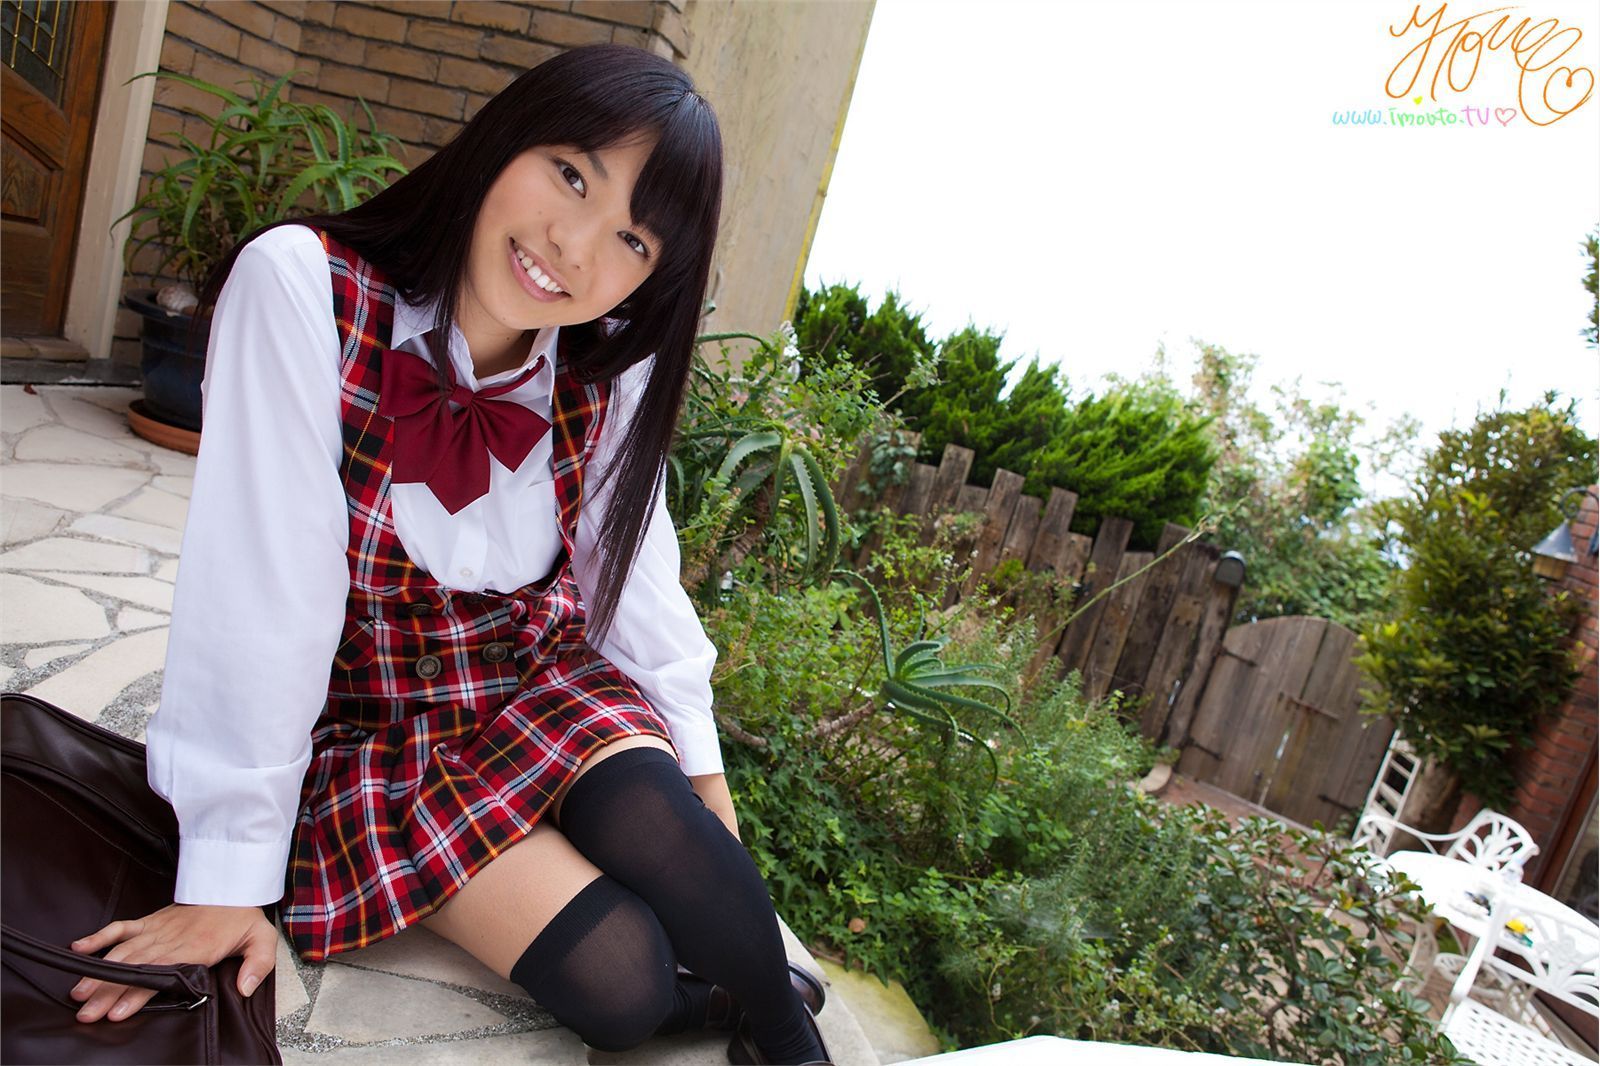 Japanese tanned schoolgirl